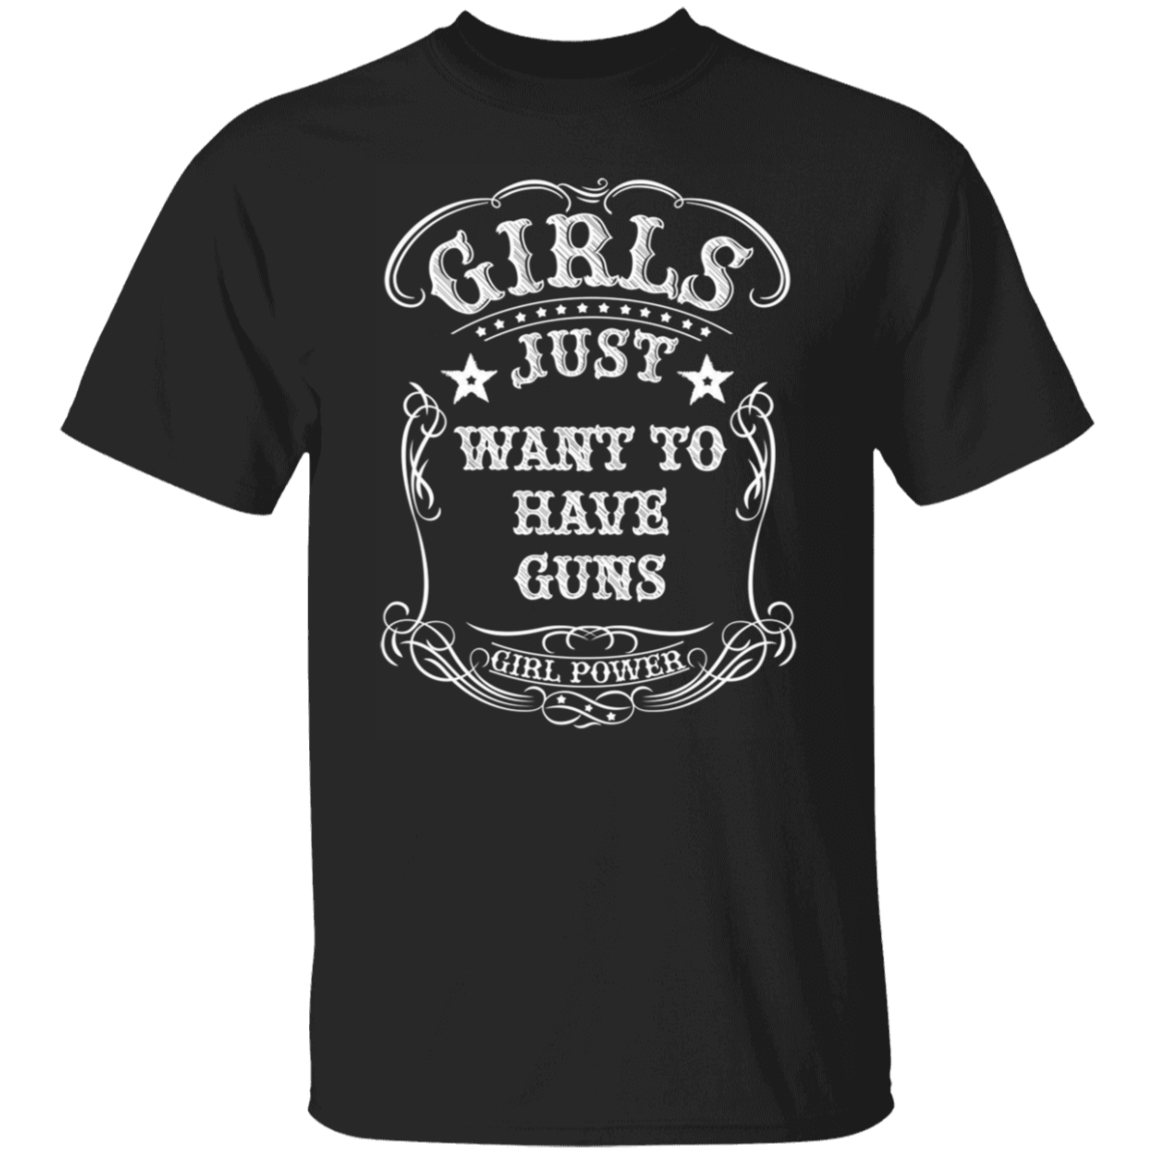 GIRLS WANT GUNS TEE